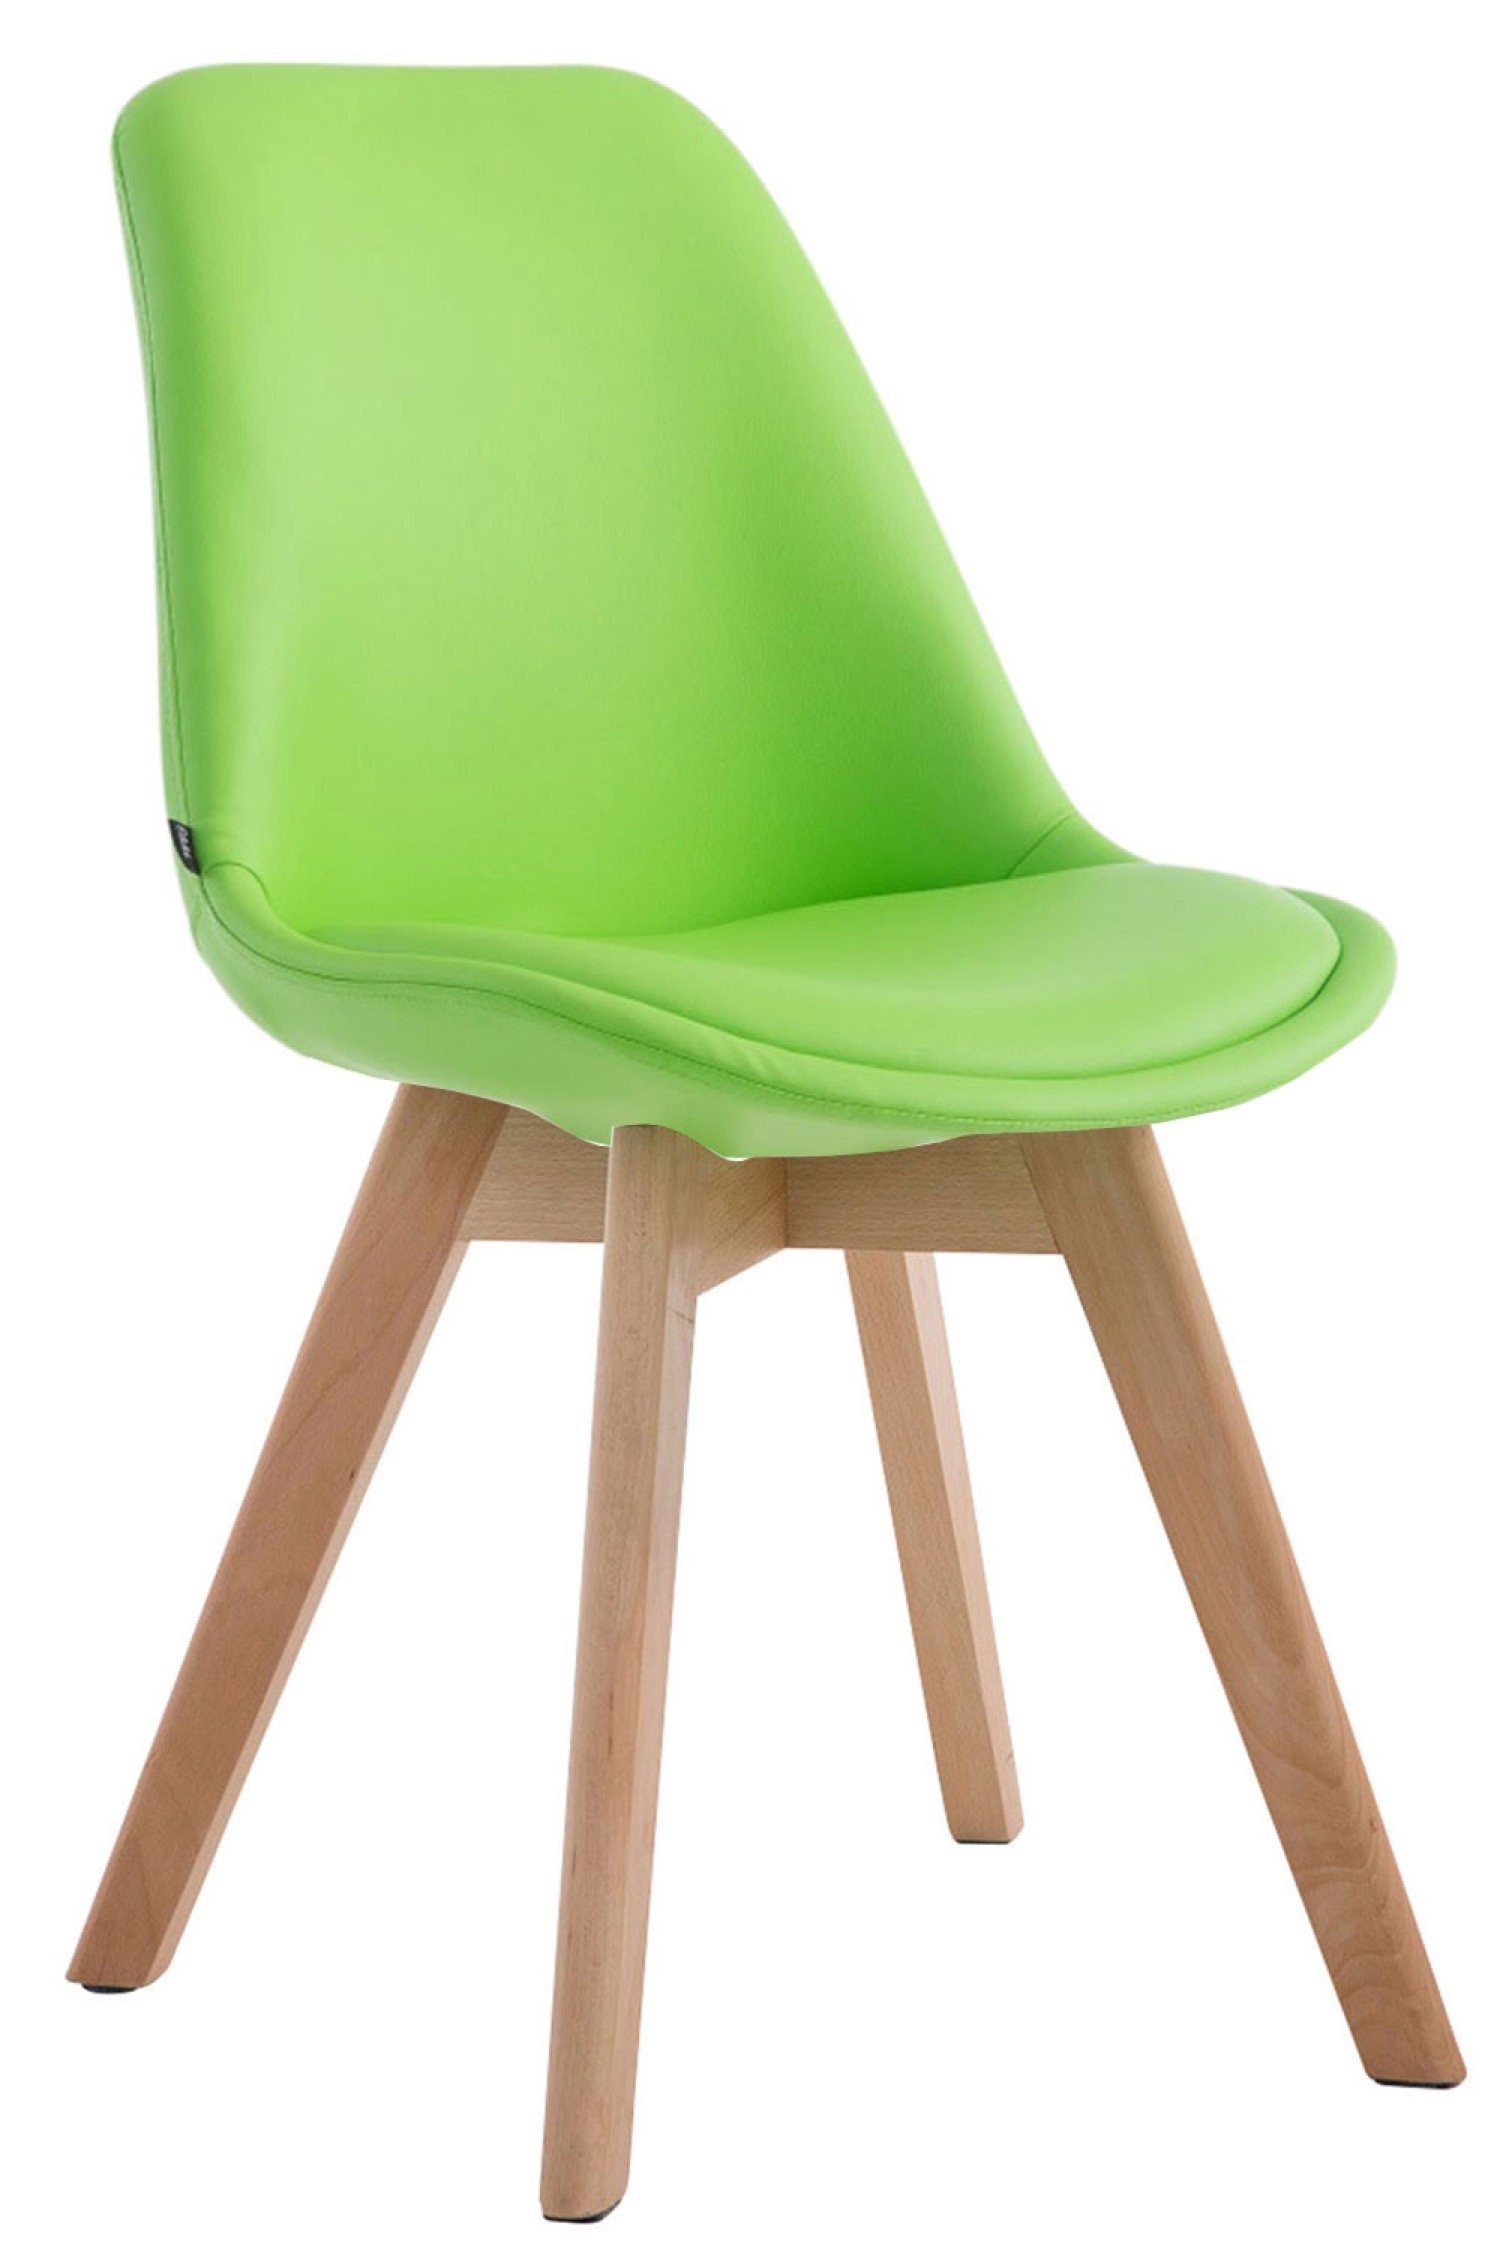 TPFLiving Esszimmerstuhl Manolo - Besucherstuhl mit Kunstlederbezug (Küchenstuhl - Gestell Buchenholz natura), Maße (TxBxH): 55 x 48 x 84cm - Farbe: grün